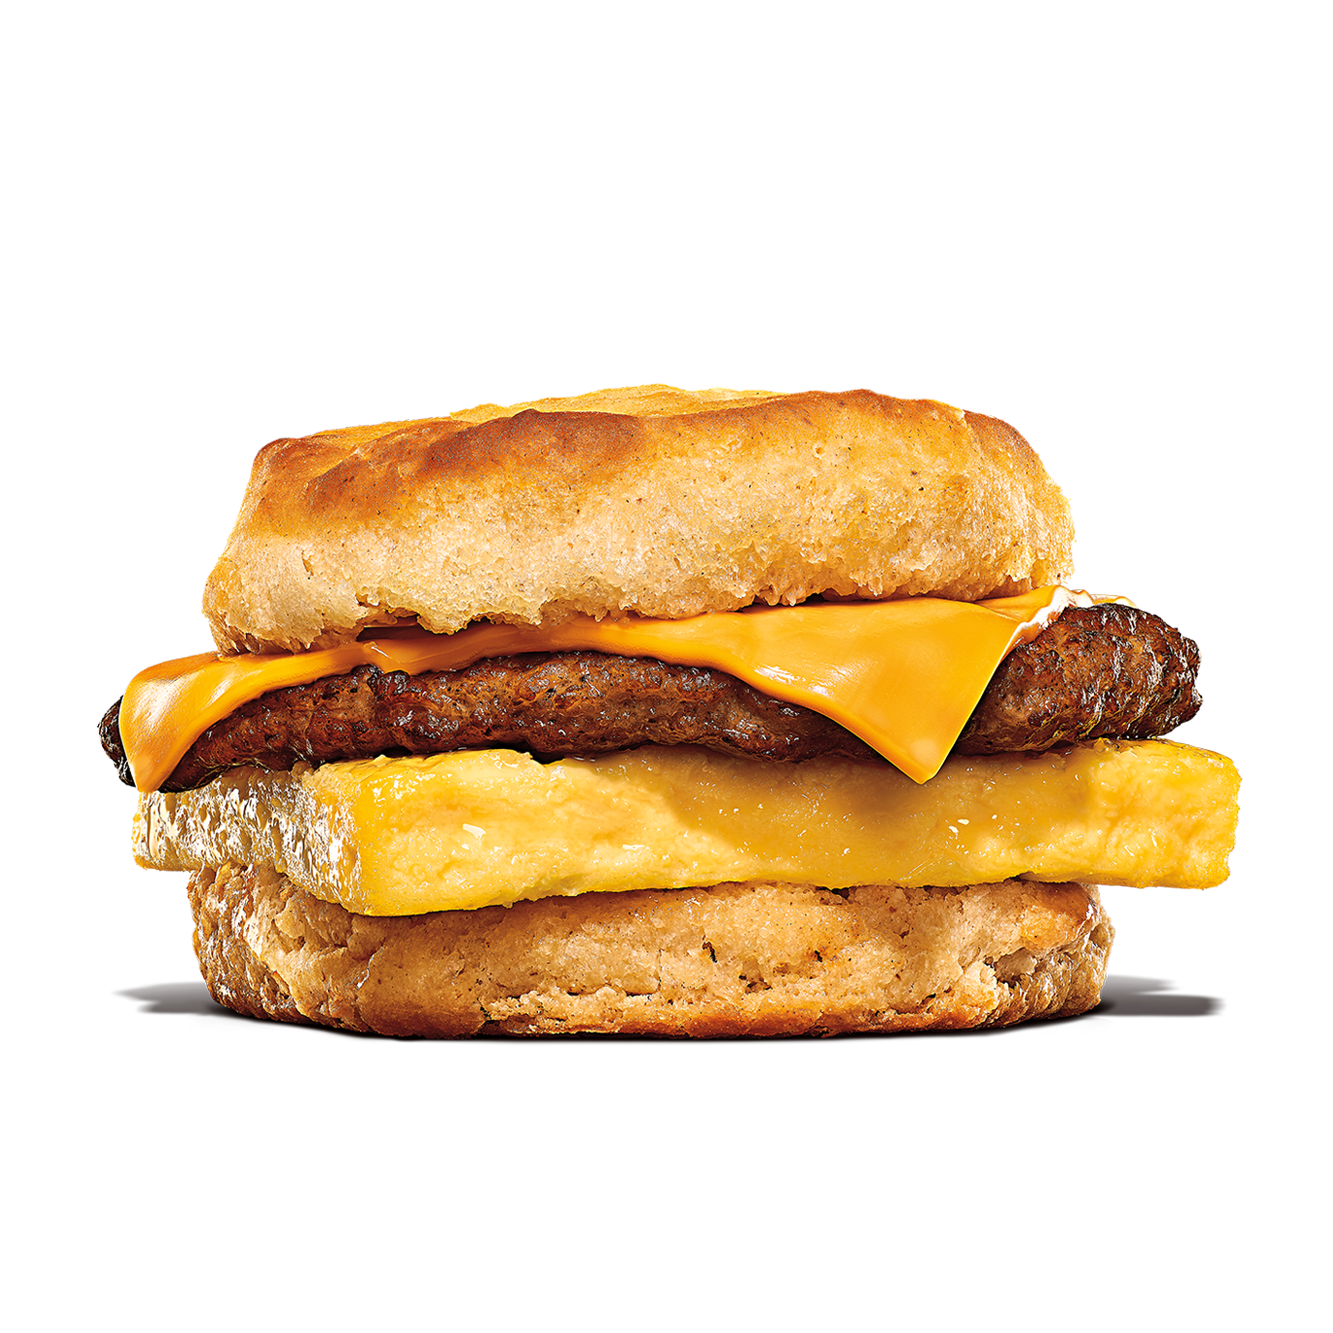 Burger King Fort Collins (970)482-5606